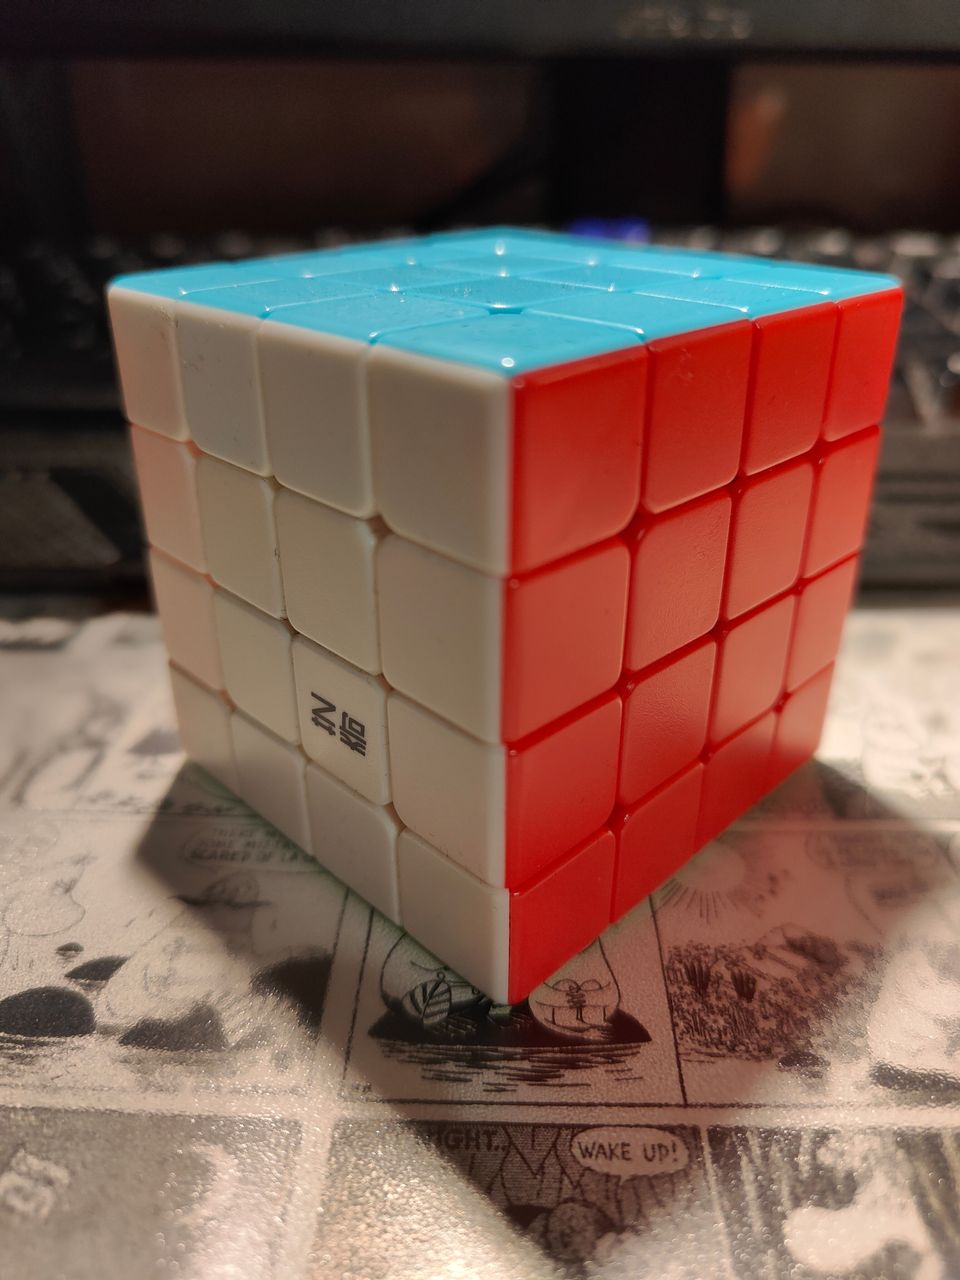 4x4 speedcube